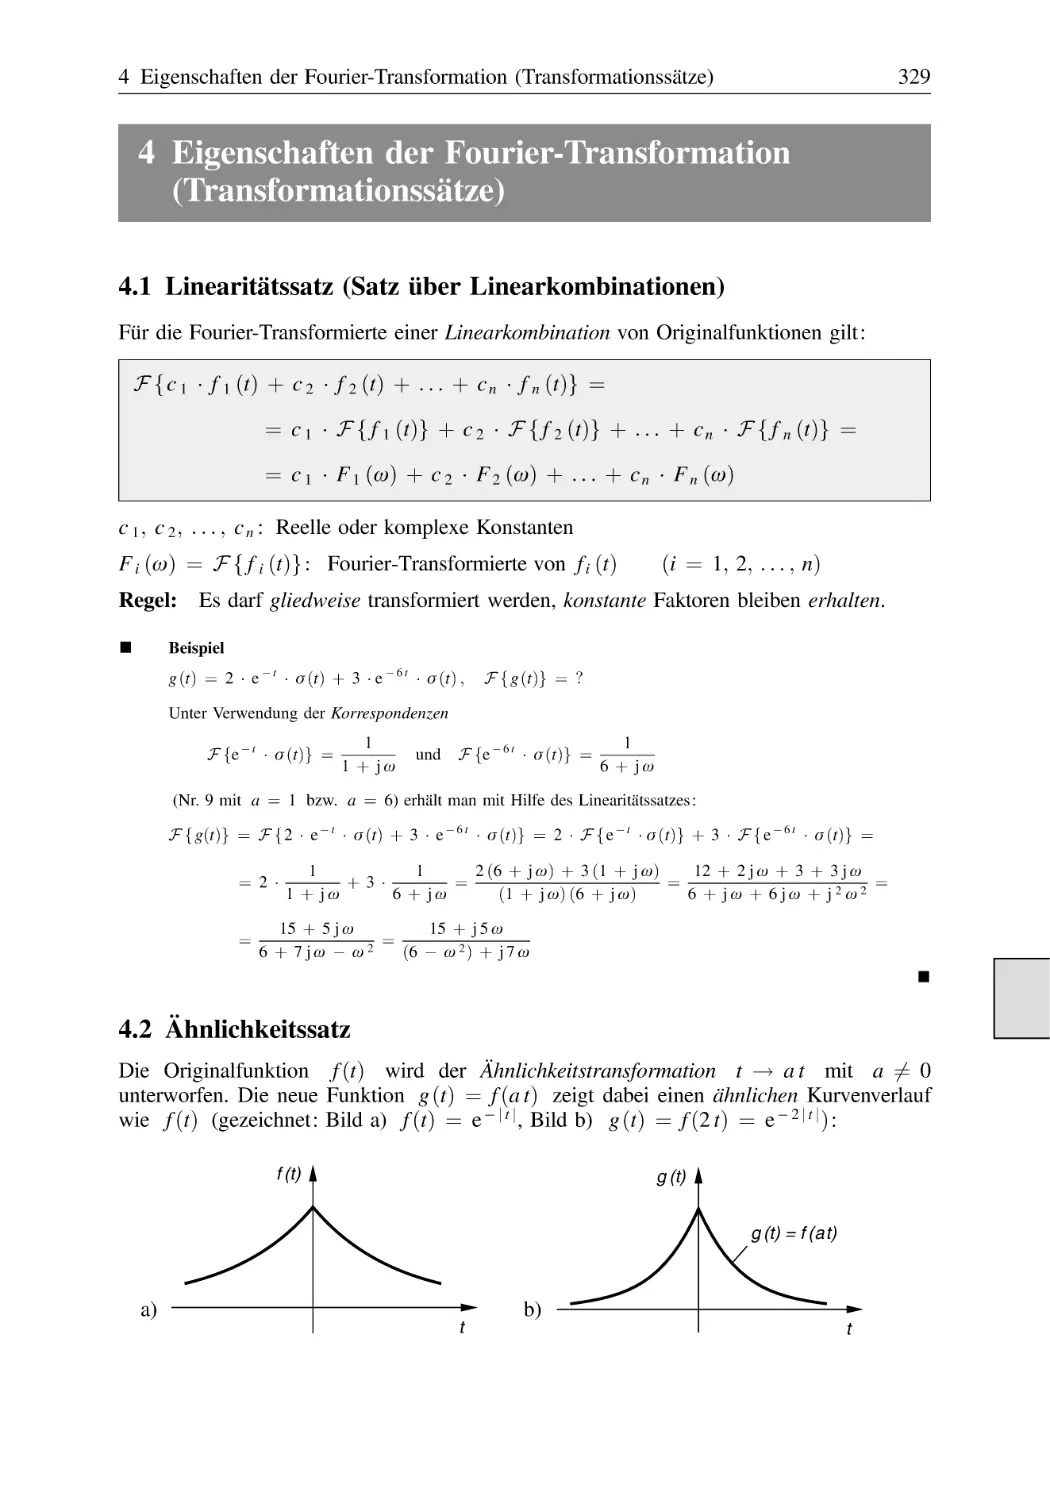 4 Eigenschaften der Fourier-Transformation (Transformationssätze)
4.1 Linearitätssatz (Satz über Linearkombinationen)
4.2 Ähnlichkeitssatz